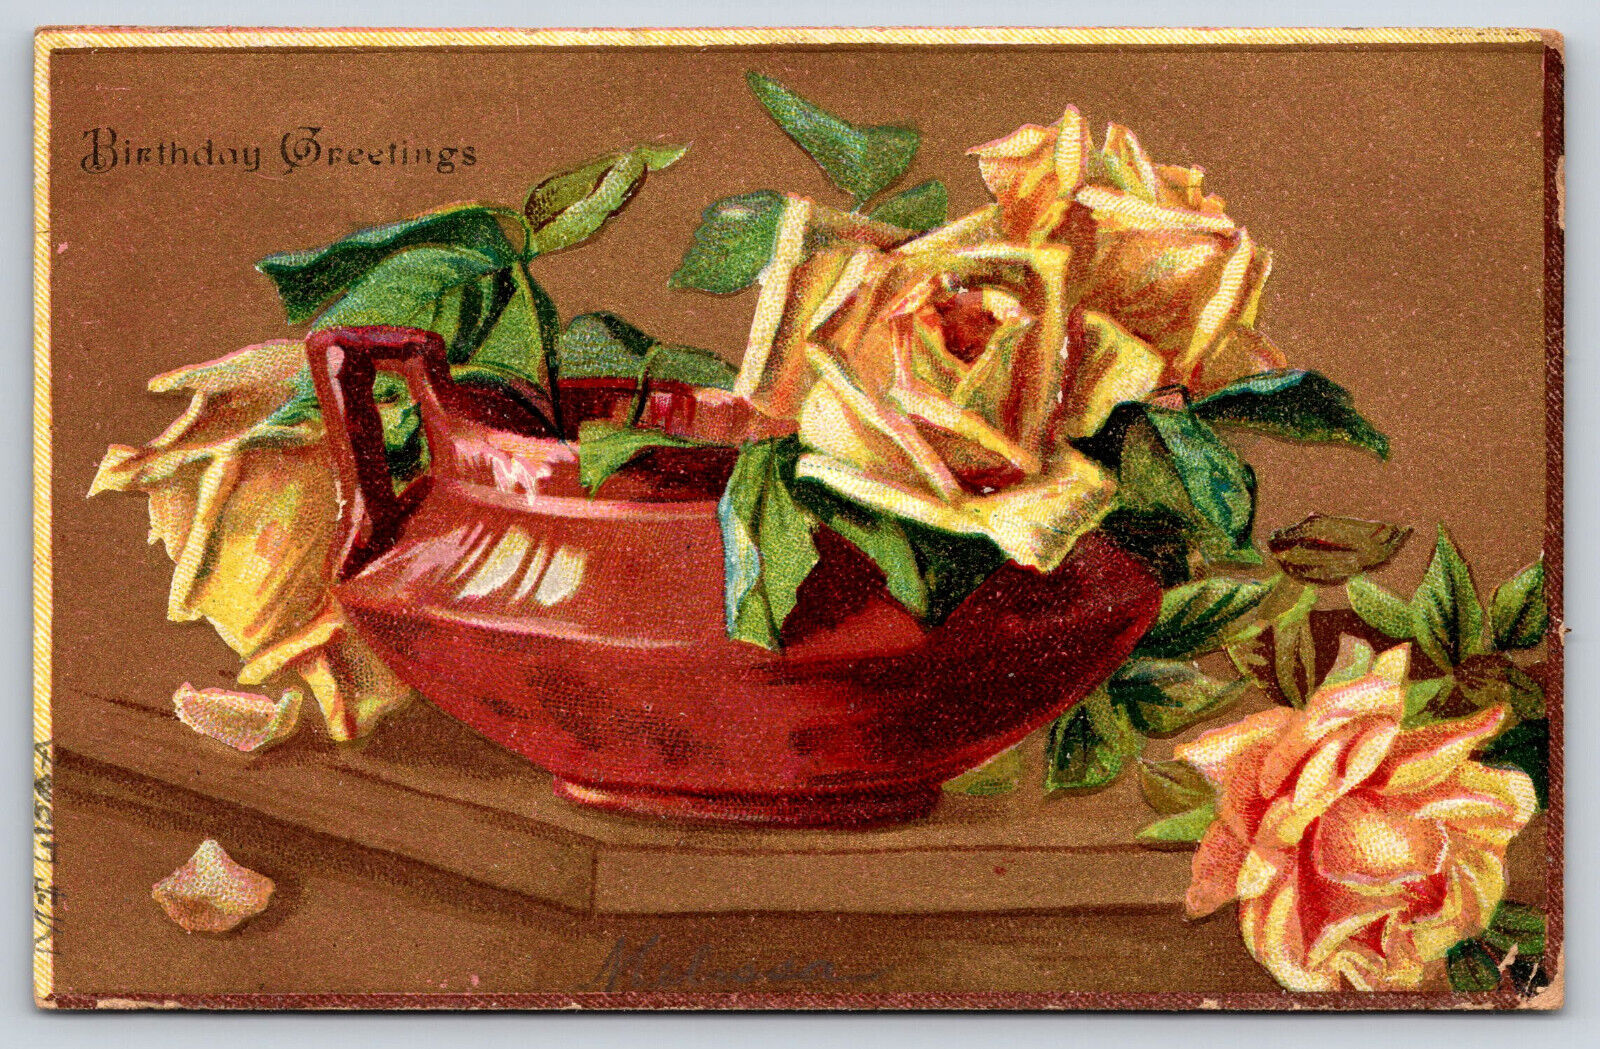 Original Vintage Antique Postcard Birthday Greetings Flowers Embossed Gold 1909